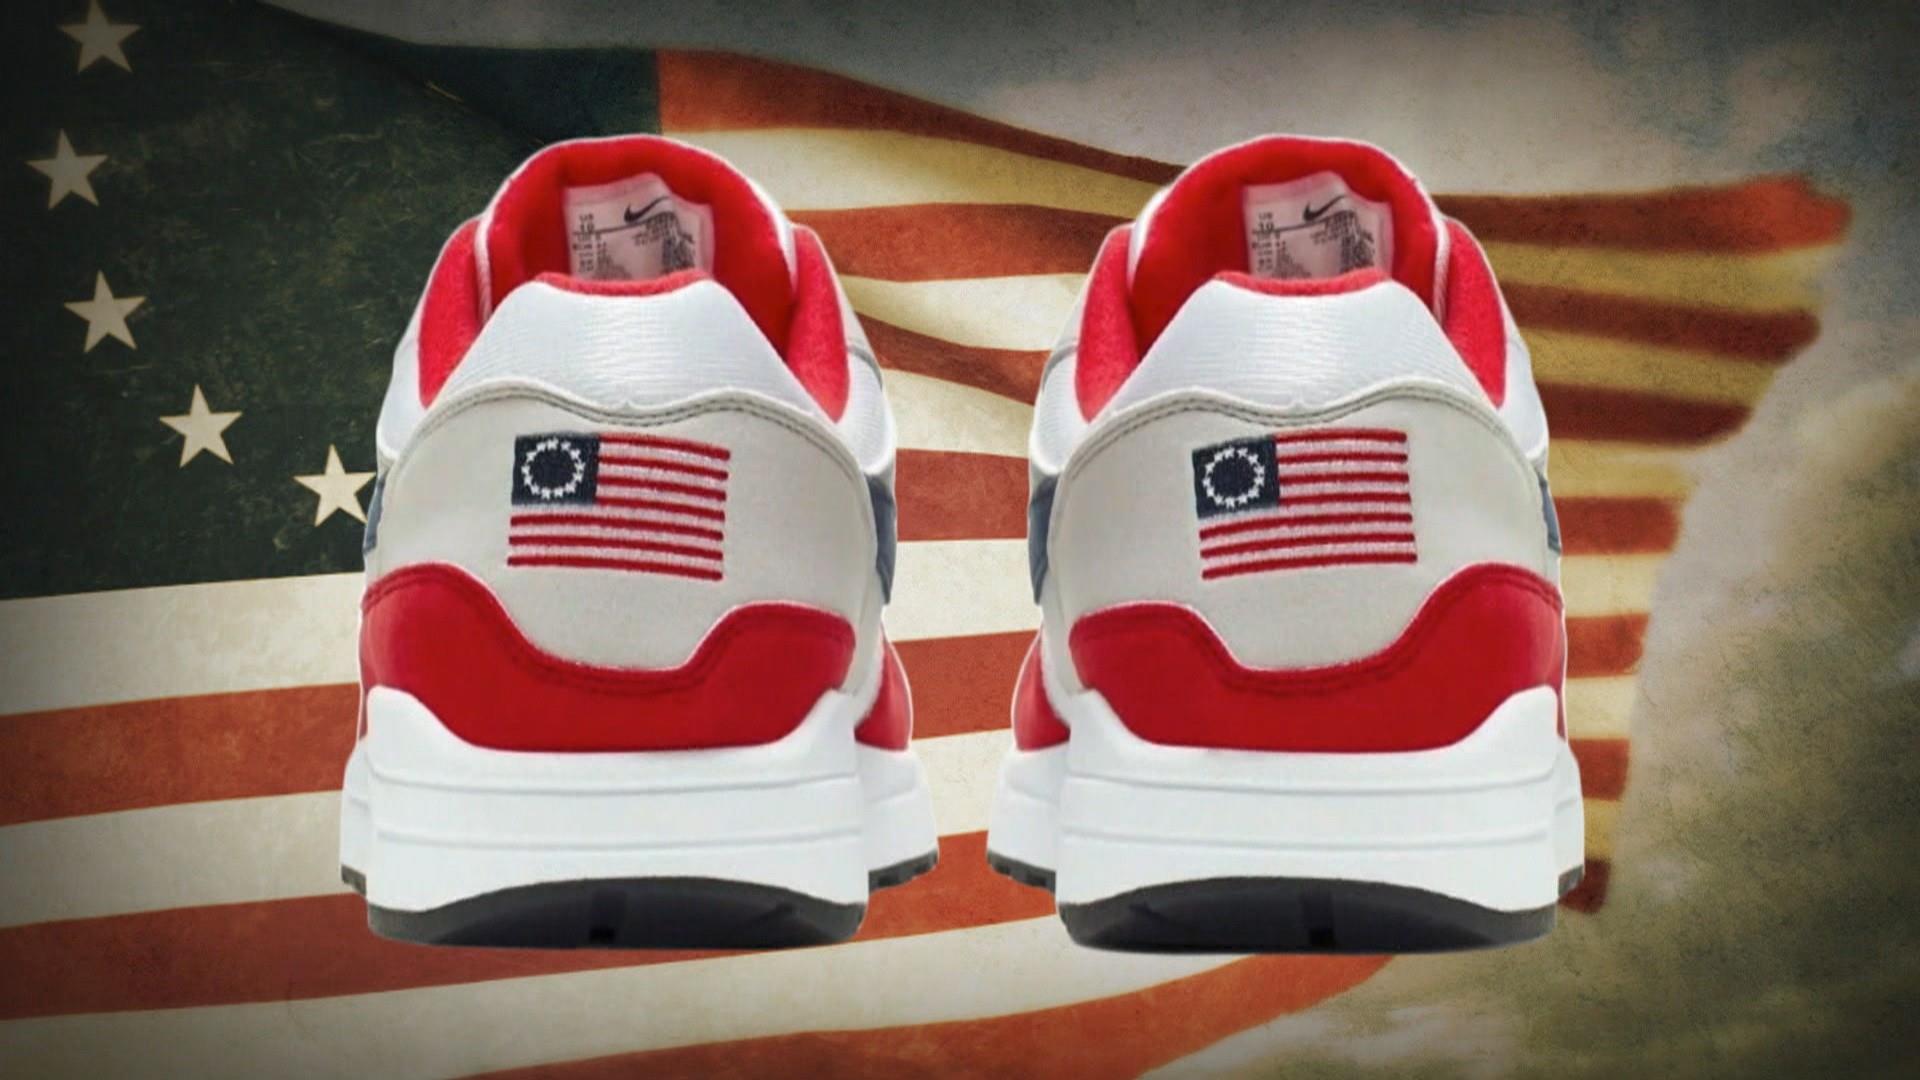 compresión Cliente Peticionario Nike pulls Betsy Ross flag sneakers after backlash